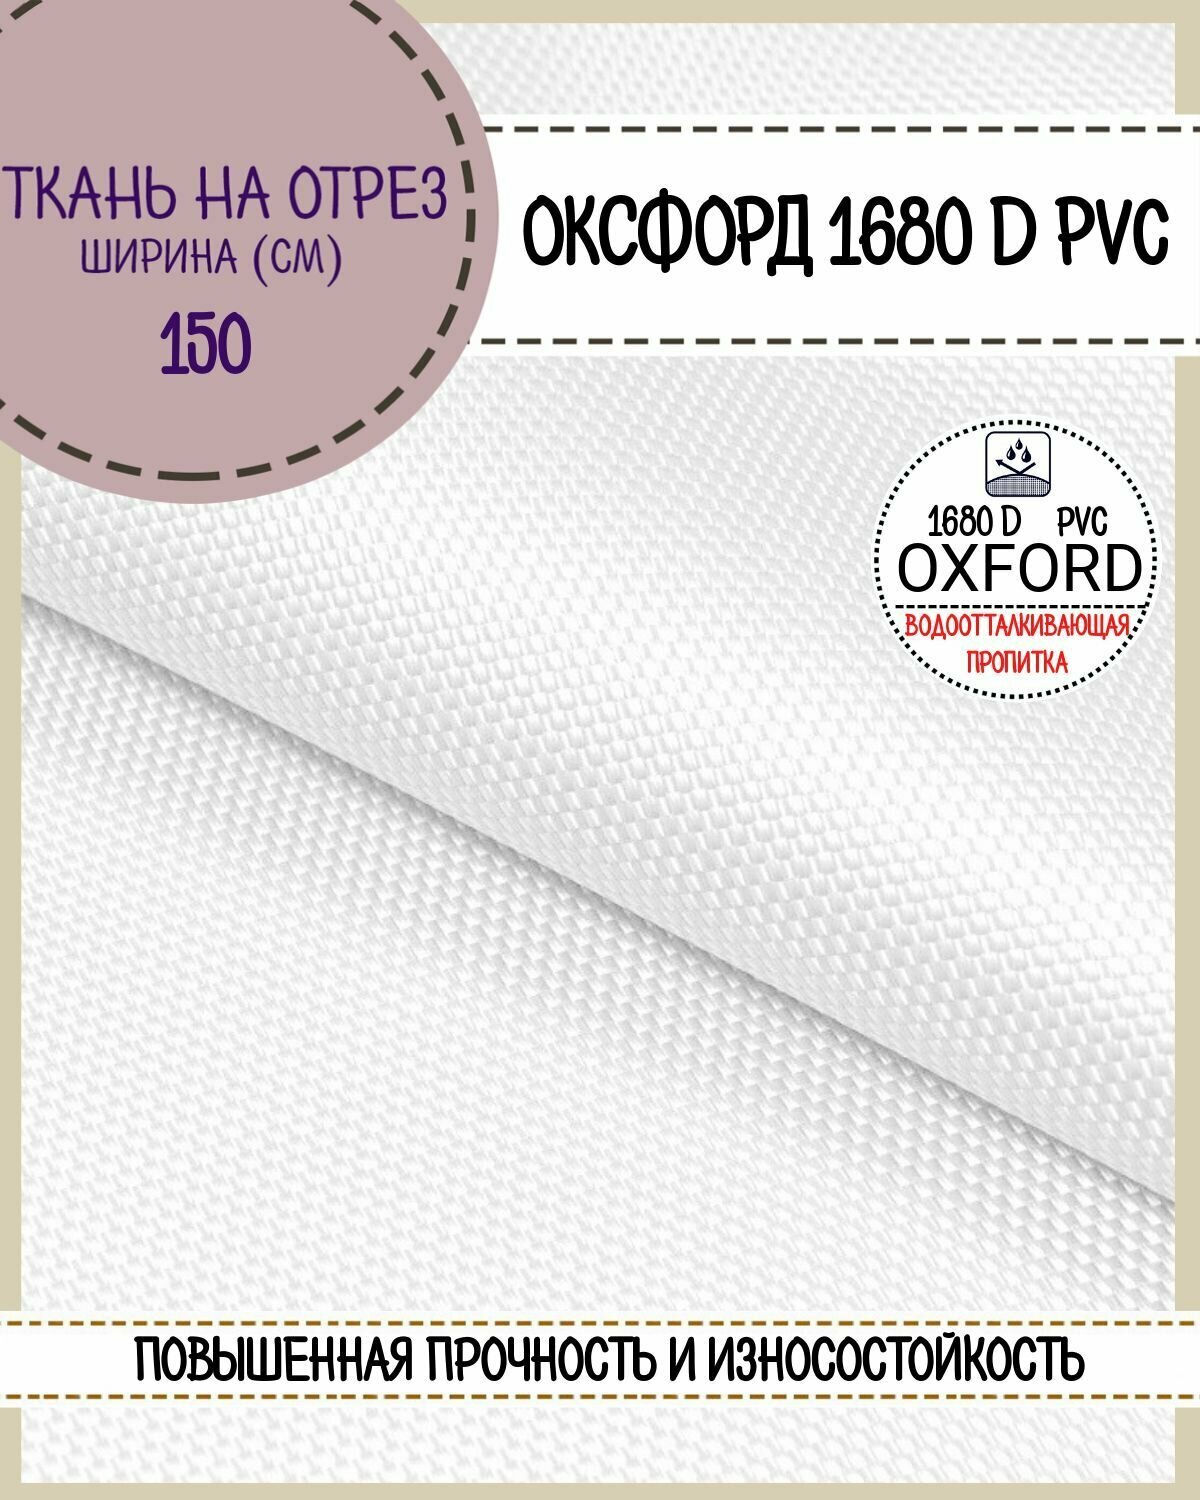 Ткань Оксфорд Oxford 1680D PVC, пропитка водоотталкивающая, цв. белый, ш-150 см, на отрез, цена за пог. метр